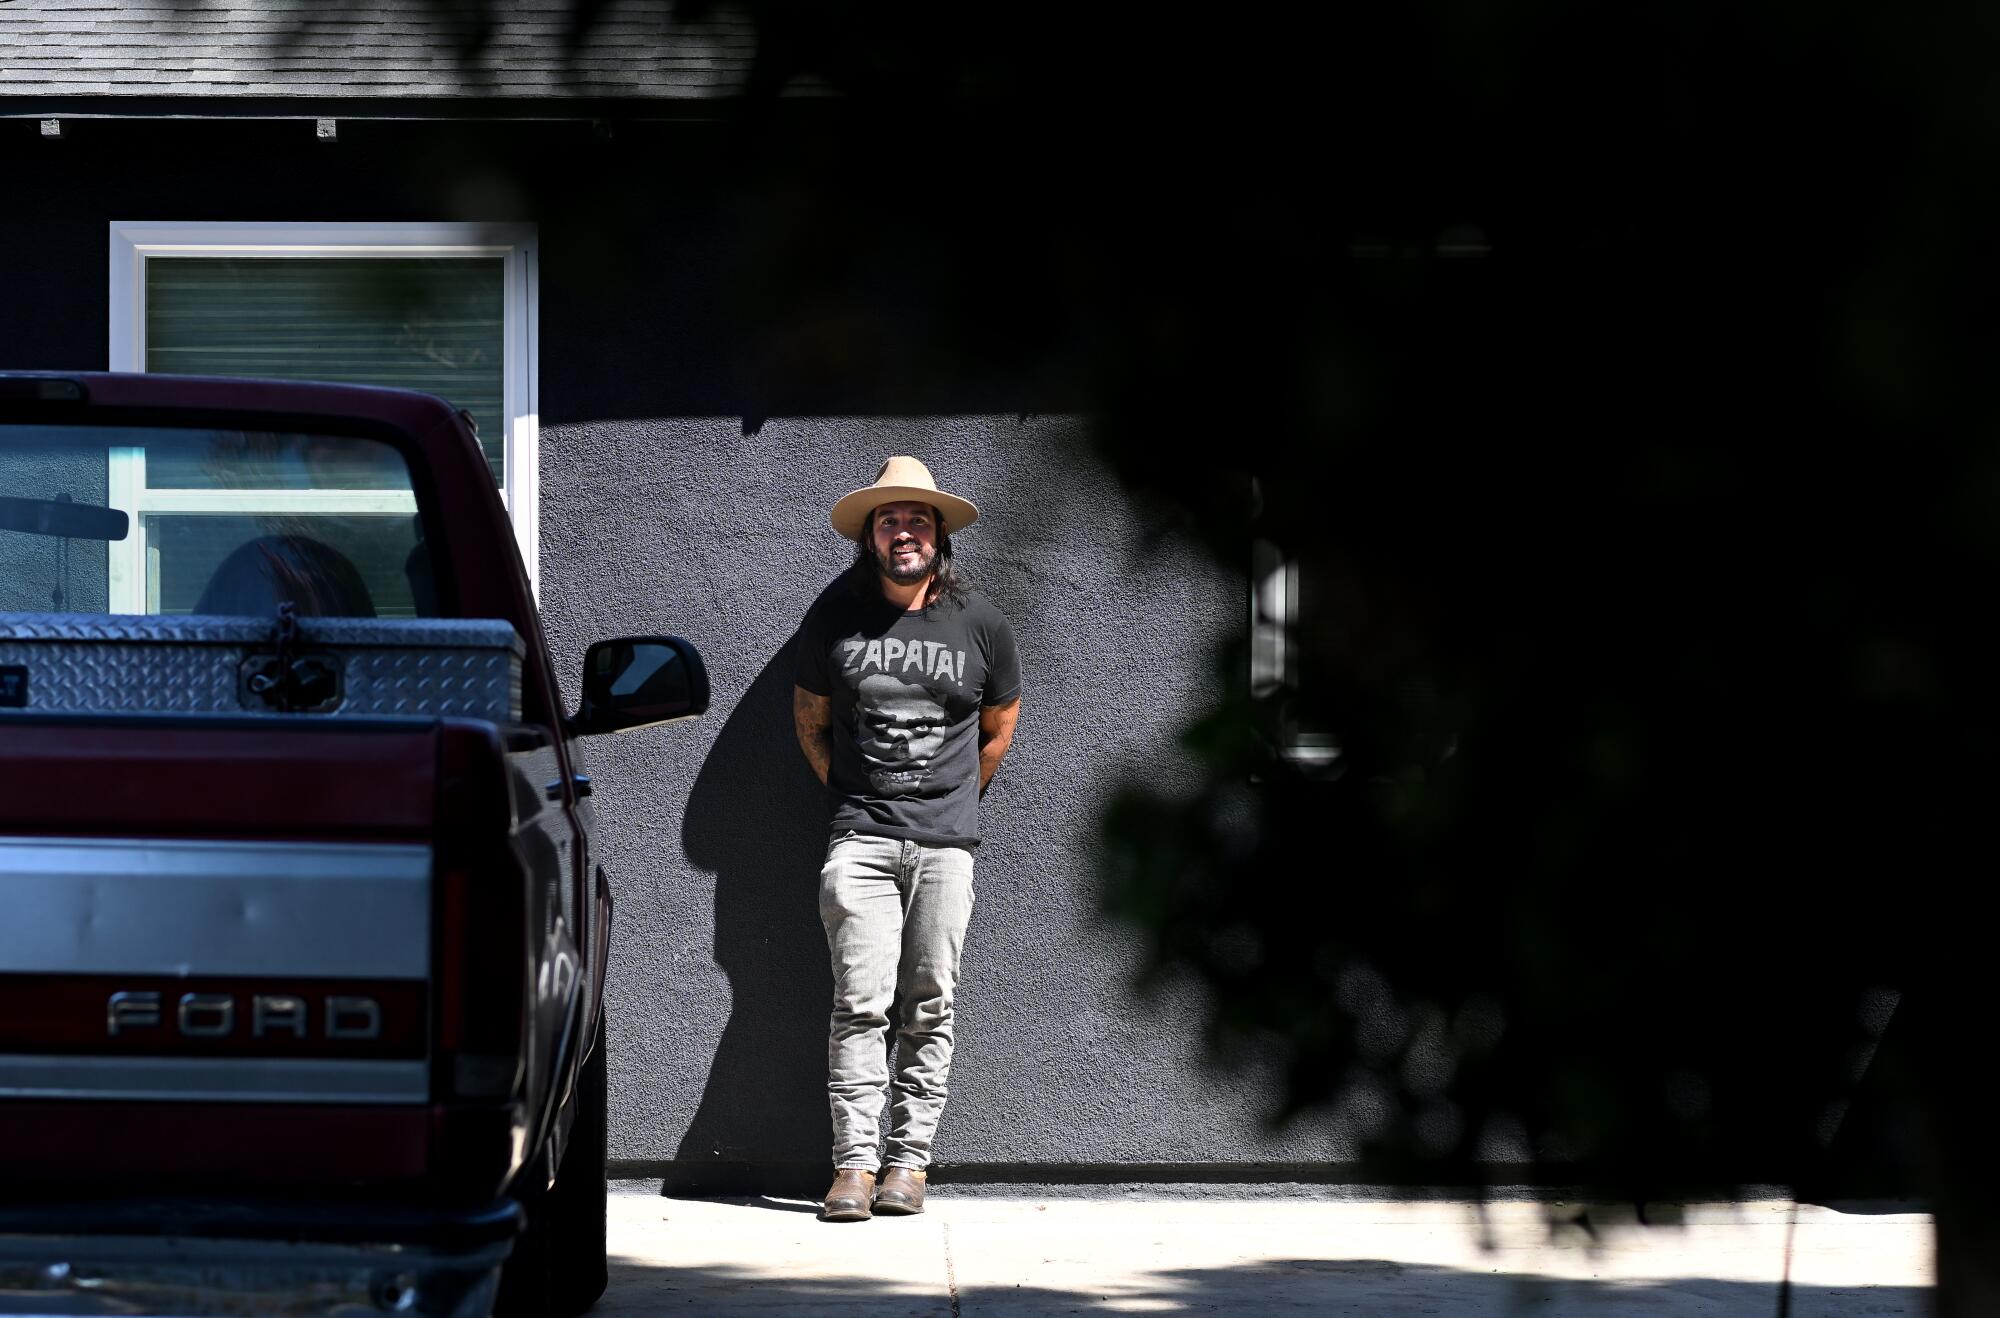  Julio Arana está parado afuera de una de sus propiedades de alquiler en Santa Ana.